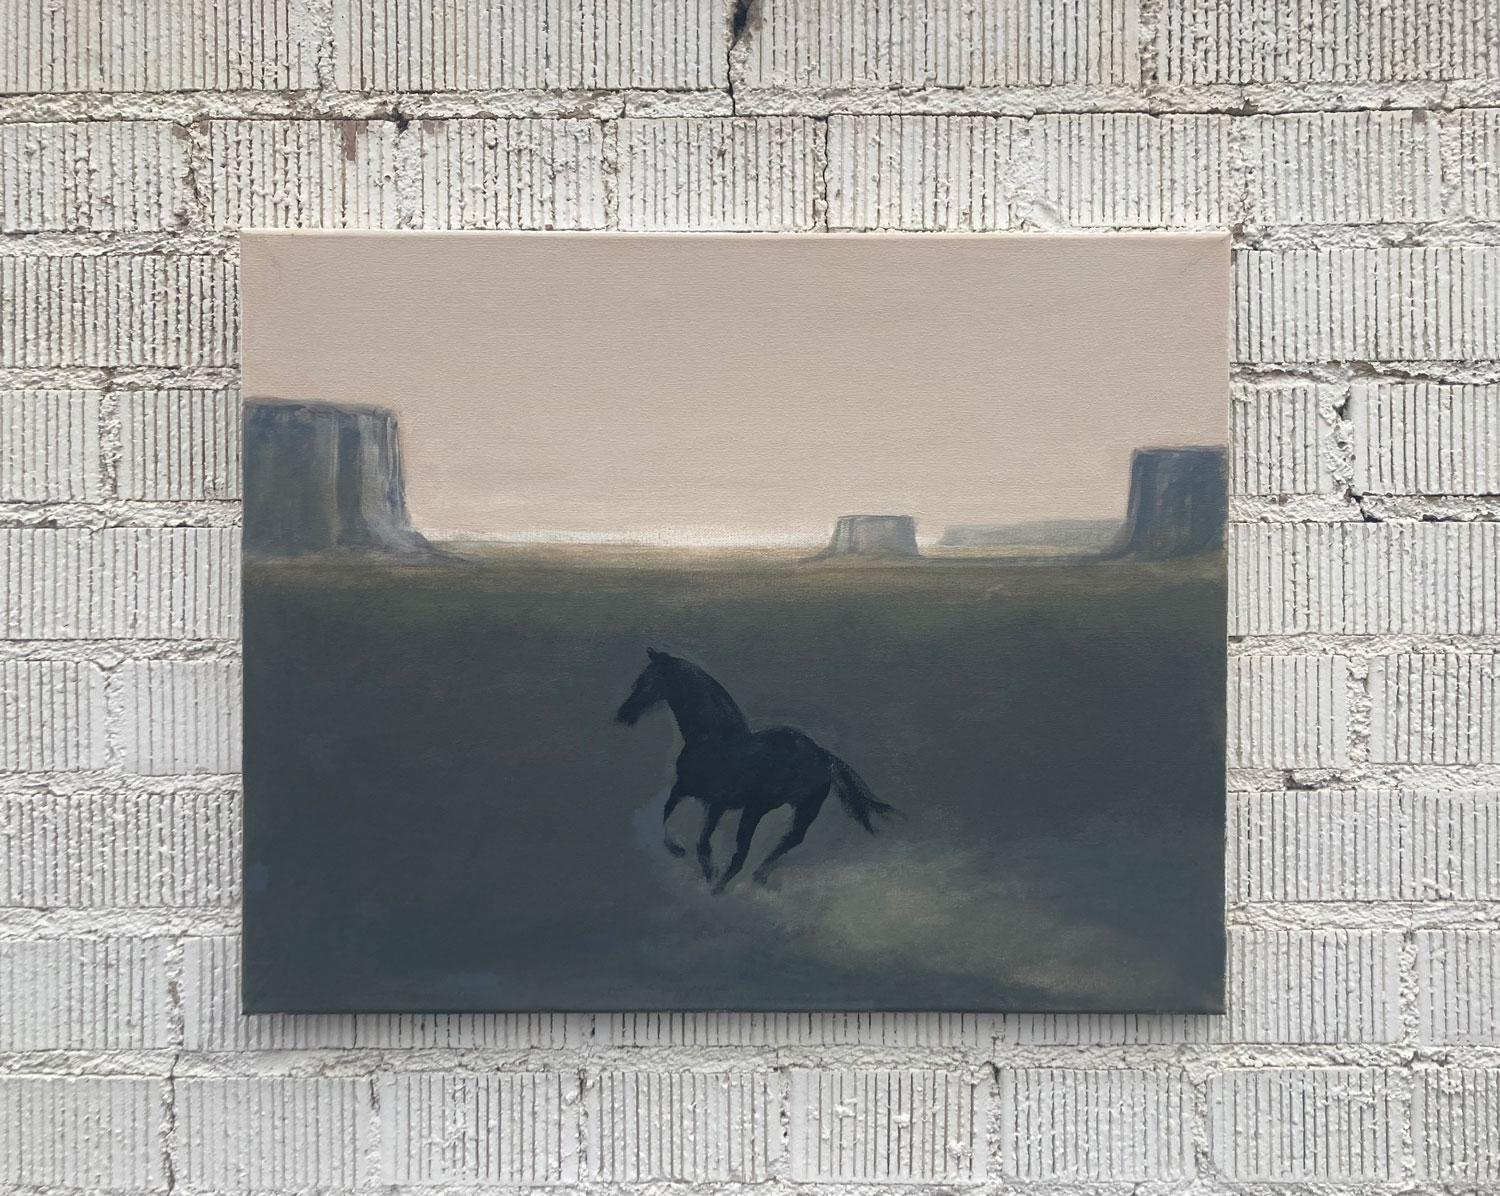 <p>Commentaires de l'artiste<br>L'artiste Nick Bontorno peint un cheval noir courant vers les falaises désertiques lointaines. Il rend le sujet avec une représentation minimale dans le style du primitivisme. La palette de pastels doux et le paysage